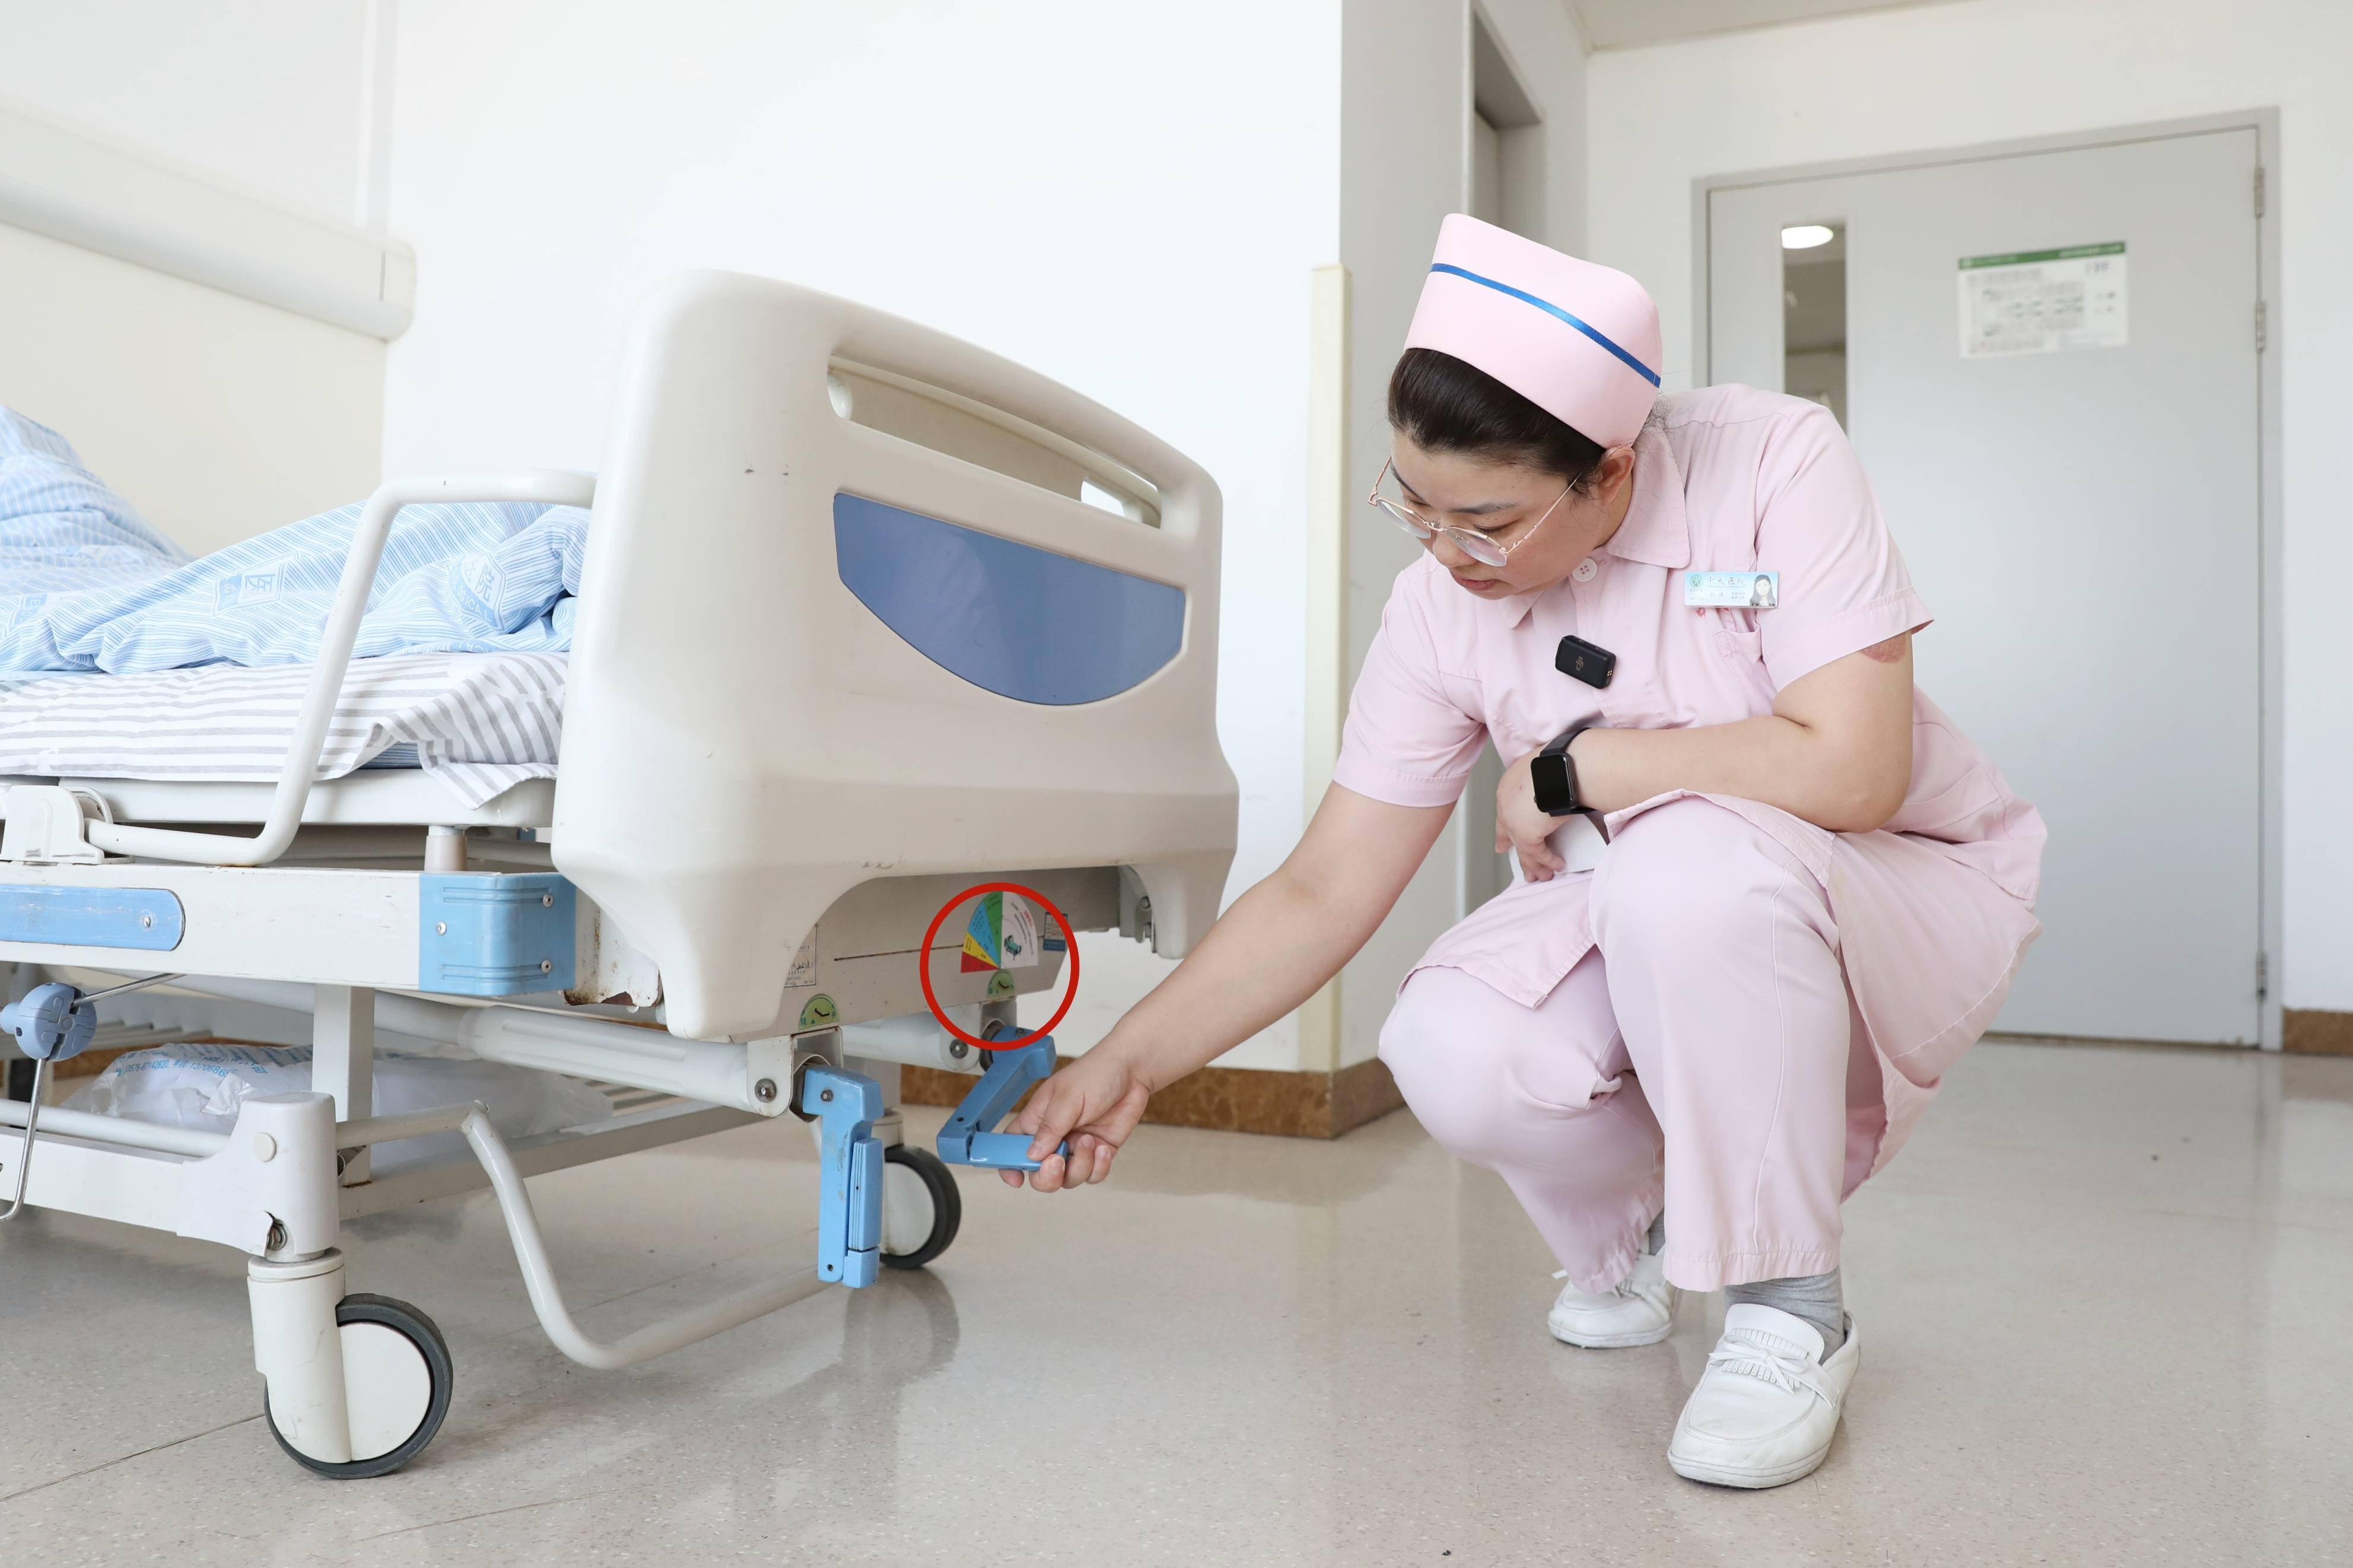 中大医院神经外科护士长刘倩根据床头抬高提示卡调整床头高度